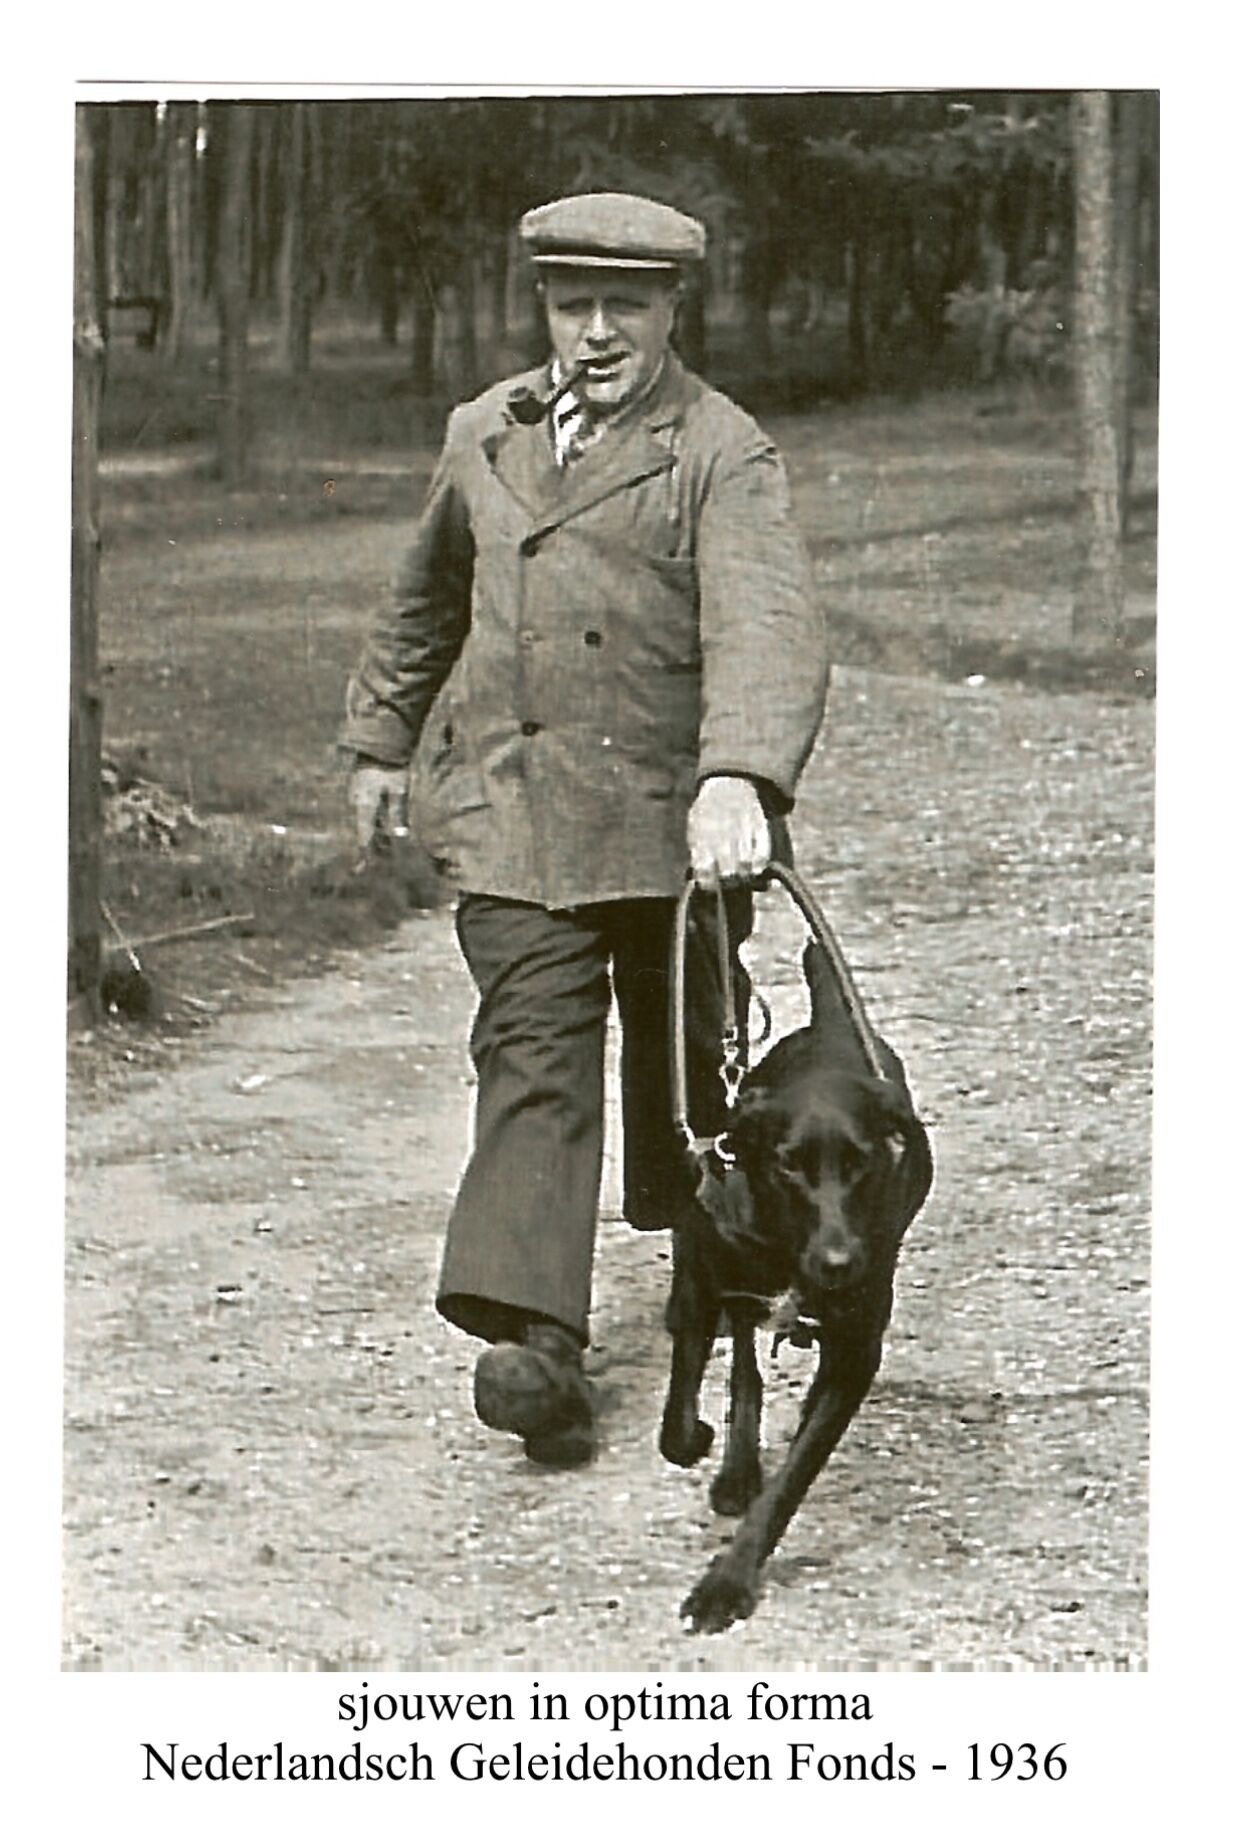 historische zwart-wit-foto met man en hond in tuig die flink trekt